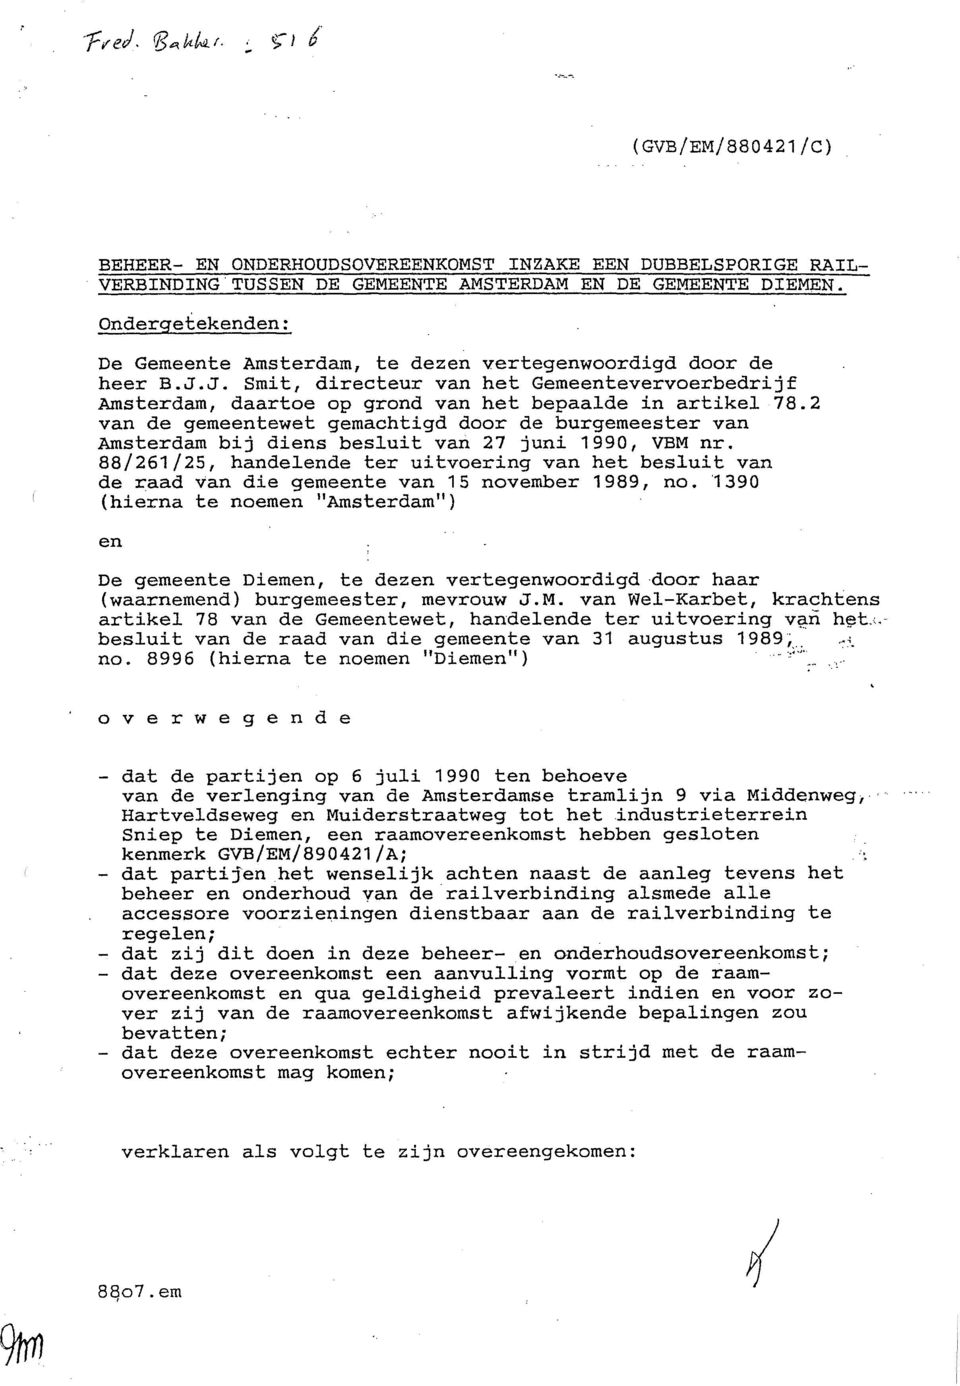 2 van de gemeentewet gemachtigd door de burgemeester van Amsterdam bij diens besluit van 27 juni 1990, VBM nr.